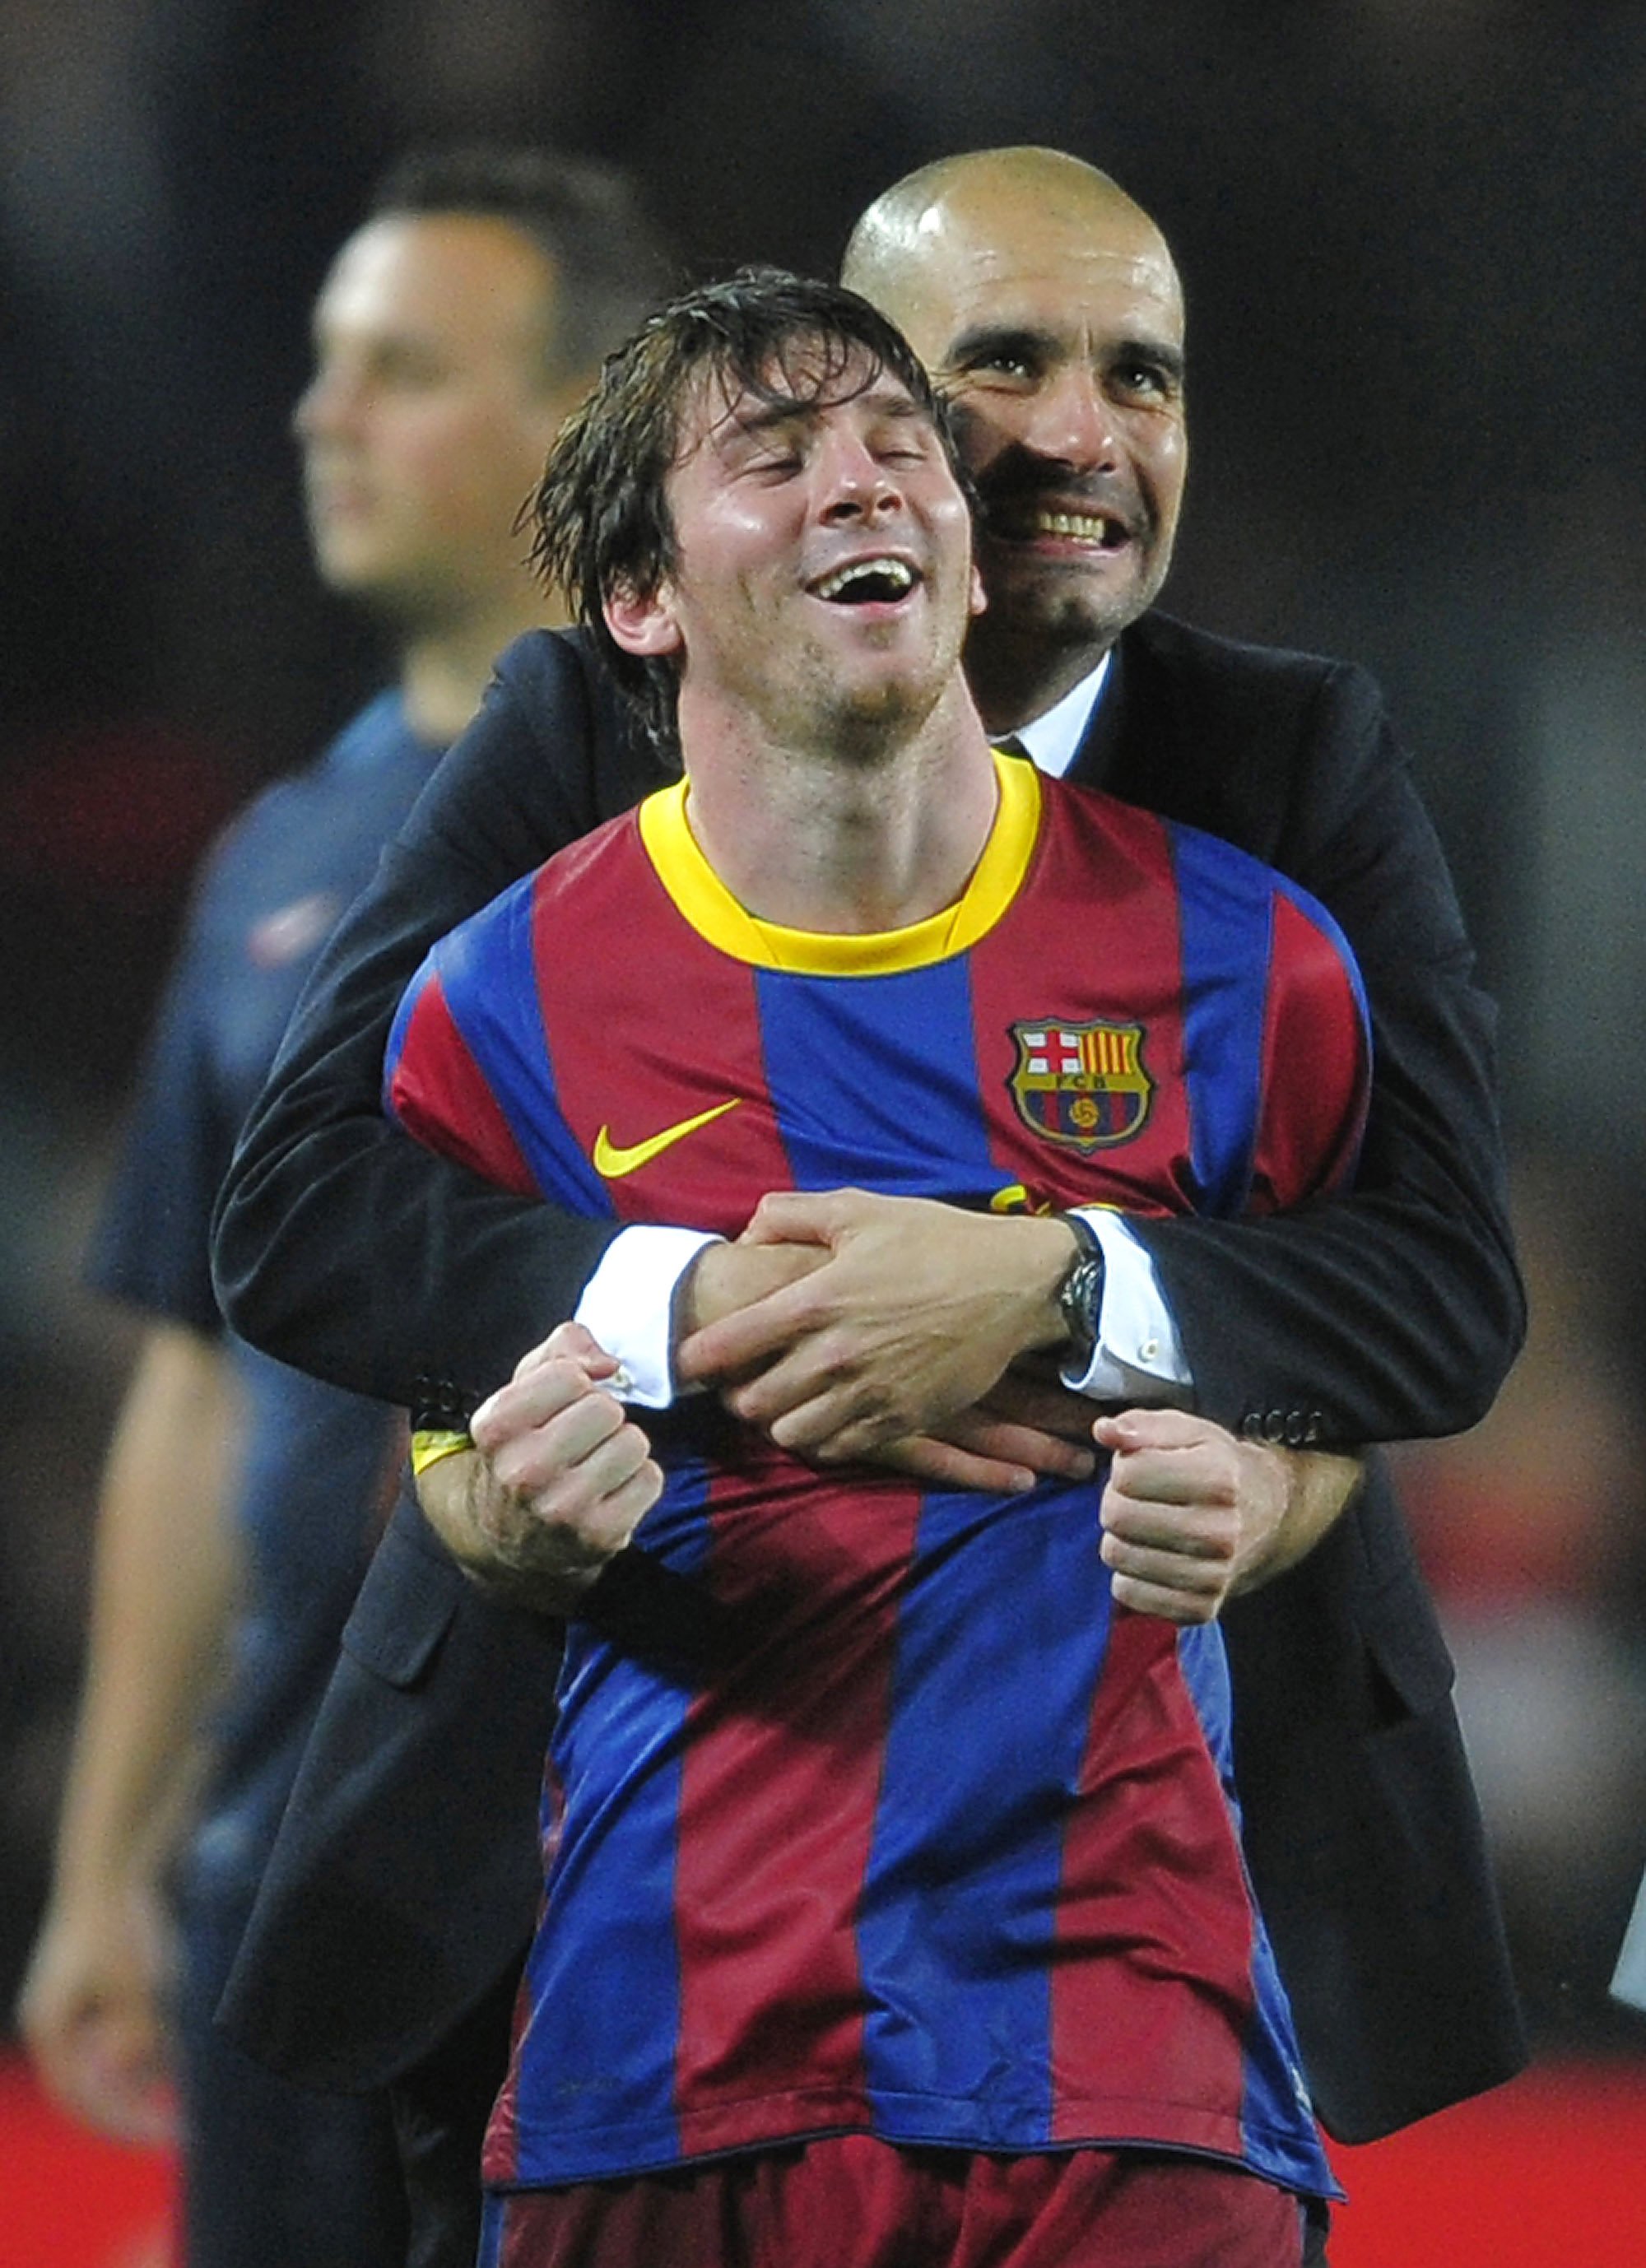 El Manchester City recula i no intentarà fitxar Messi: és massa car